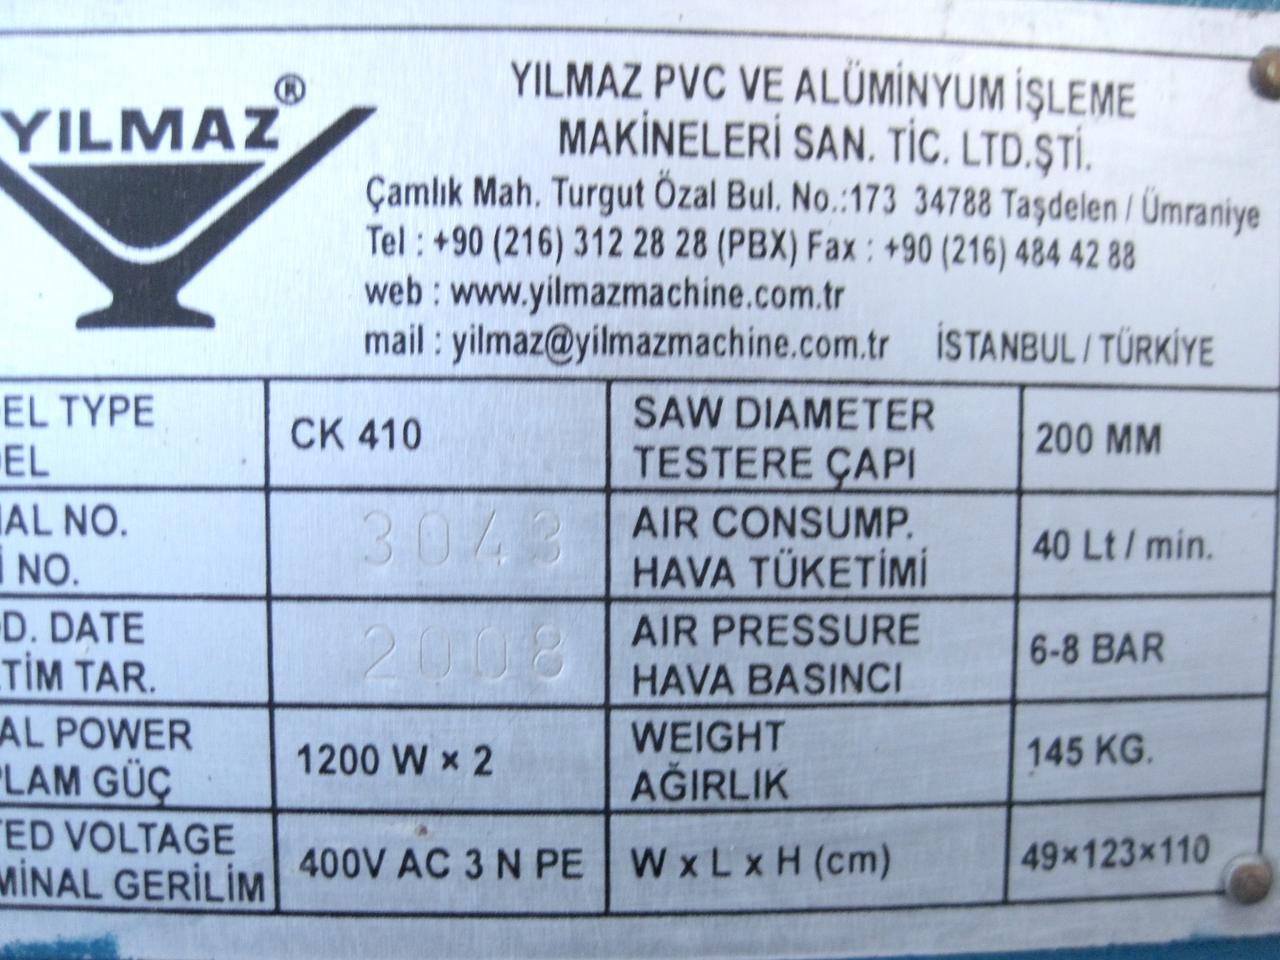 YILMAZ CK 410 Автоматический штапикорез для производства окон ПВХ (Б/У оборудование)